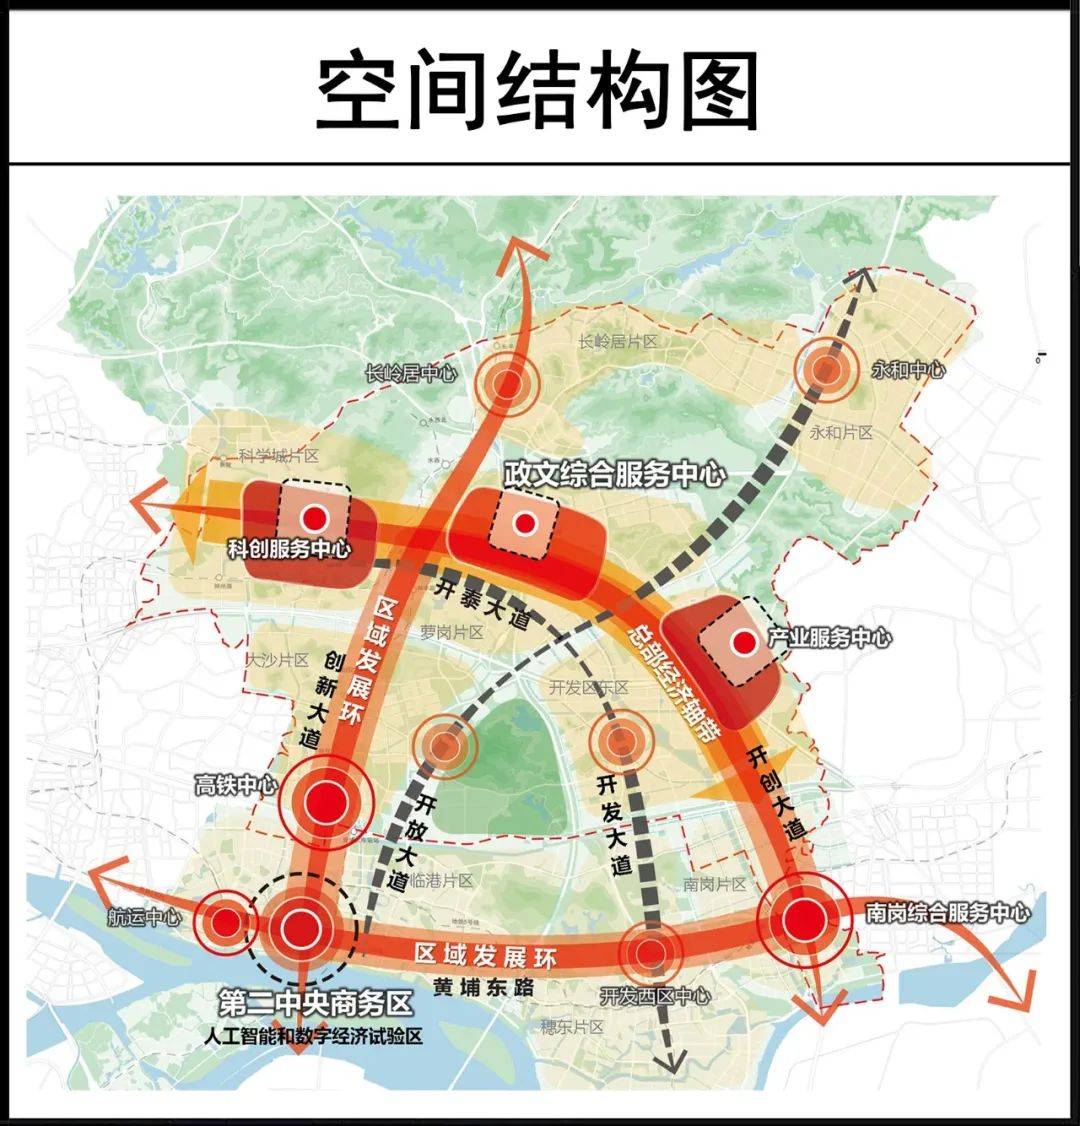 最新广州科学城扩容7倍规划设计图首次曝光